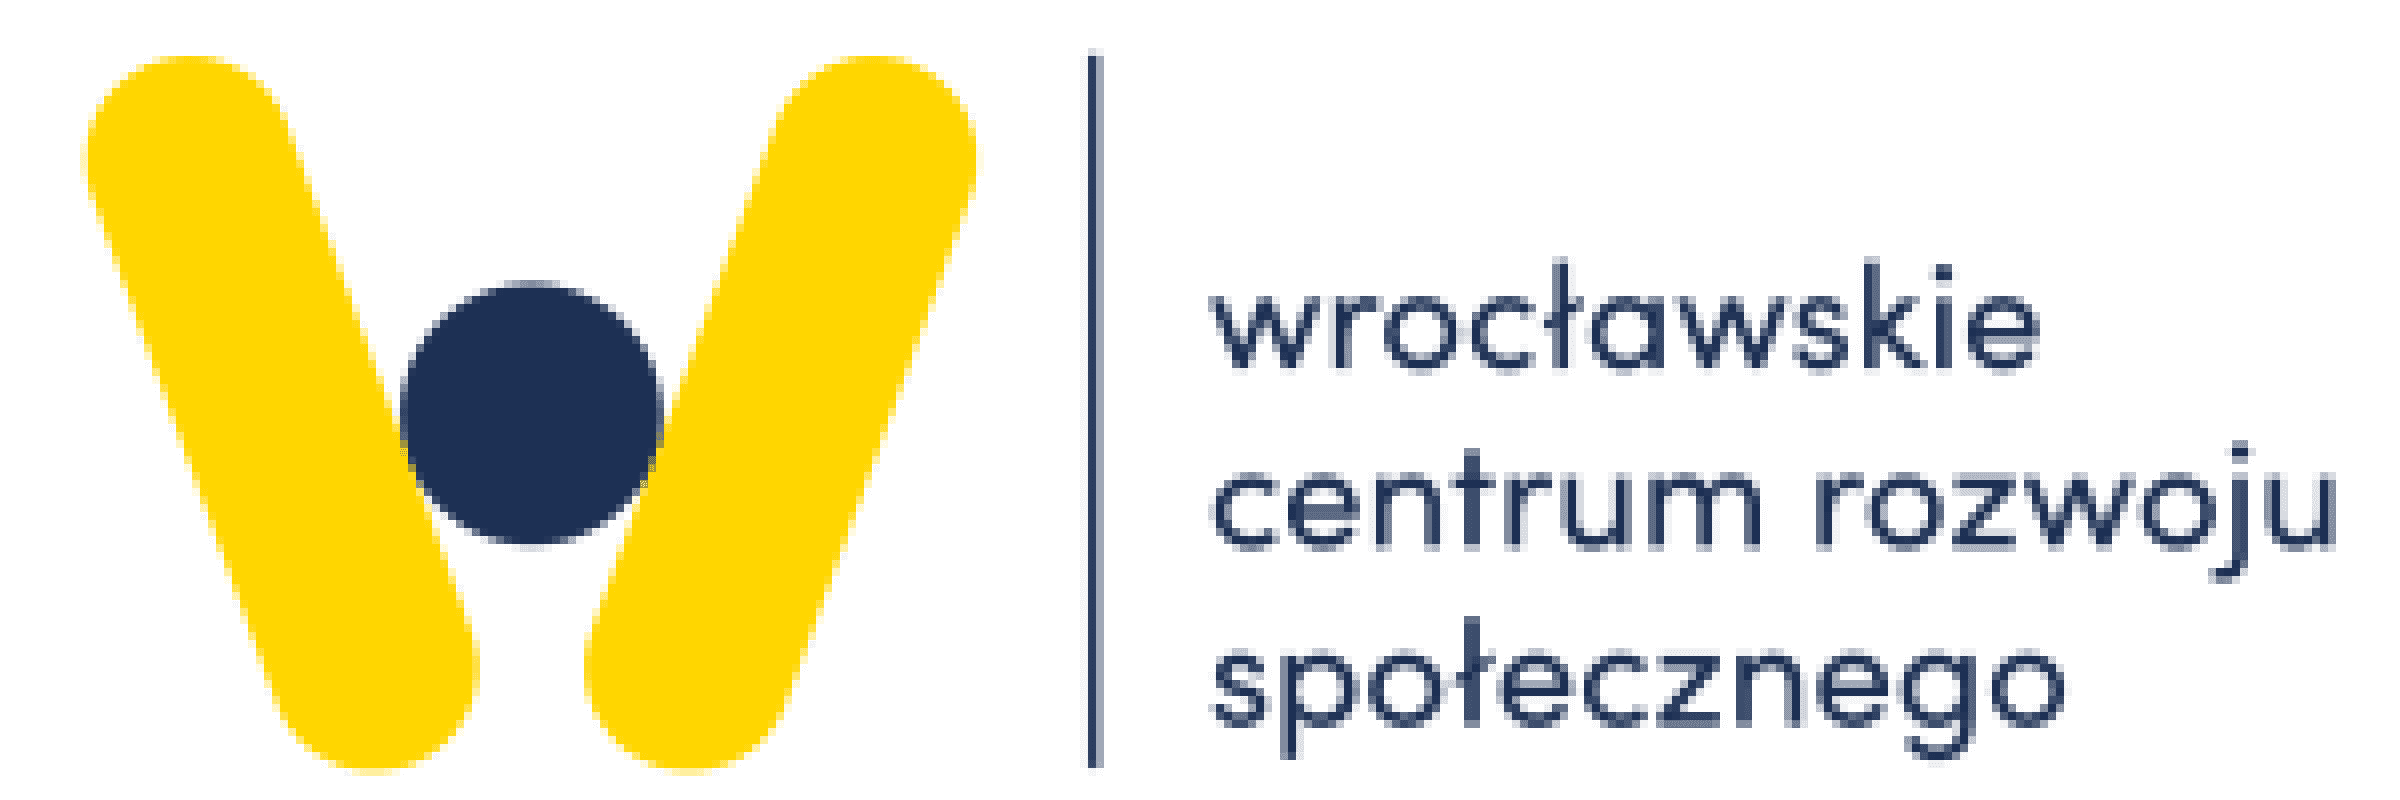 Wrocławskie Centrum Rozwoju Społecznego - logo